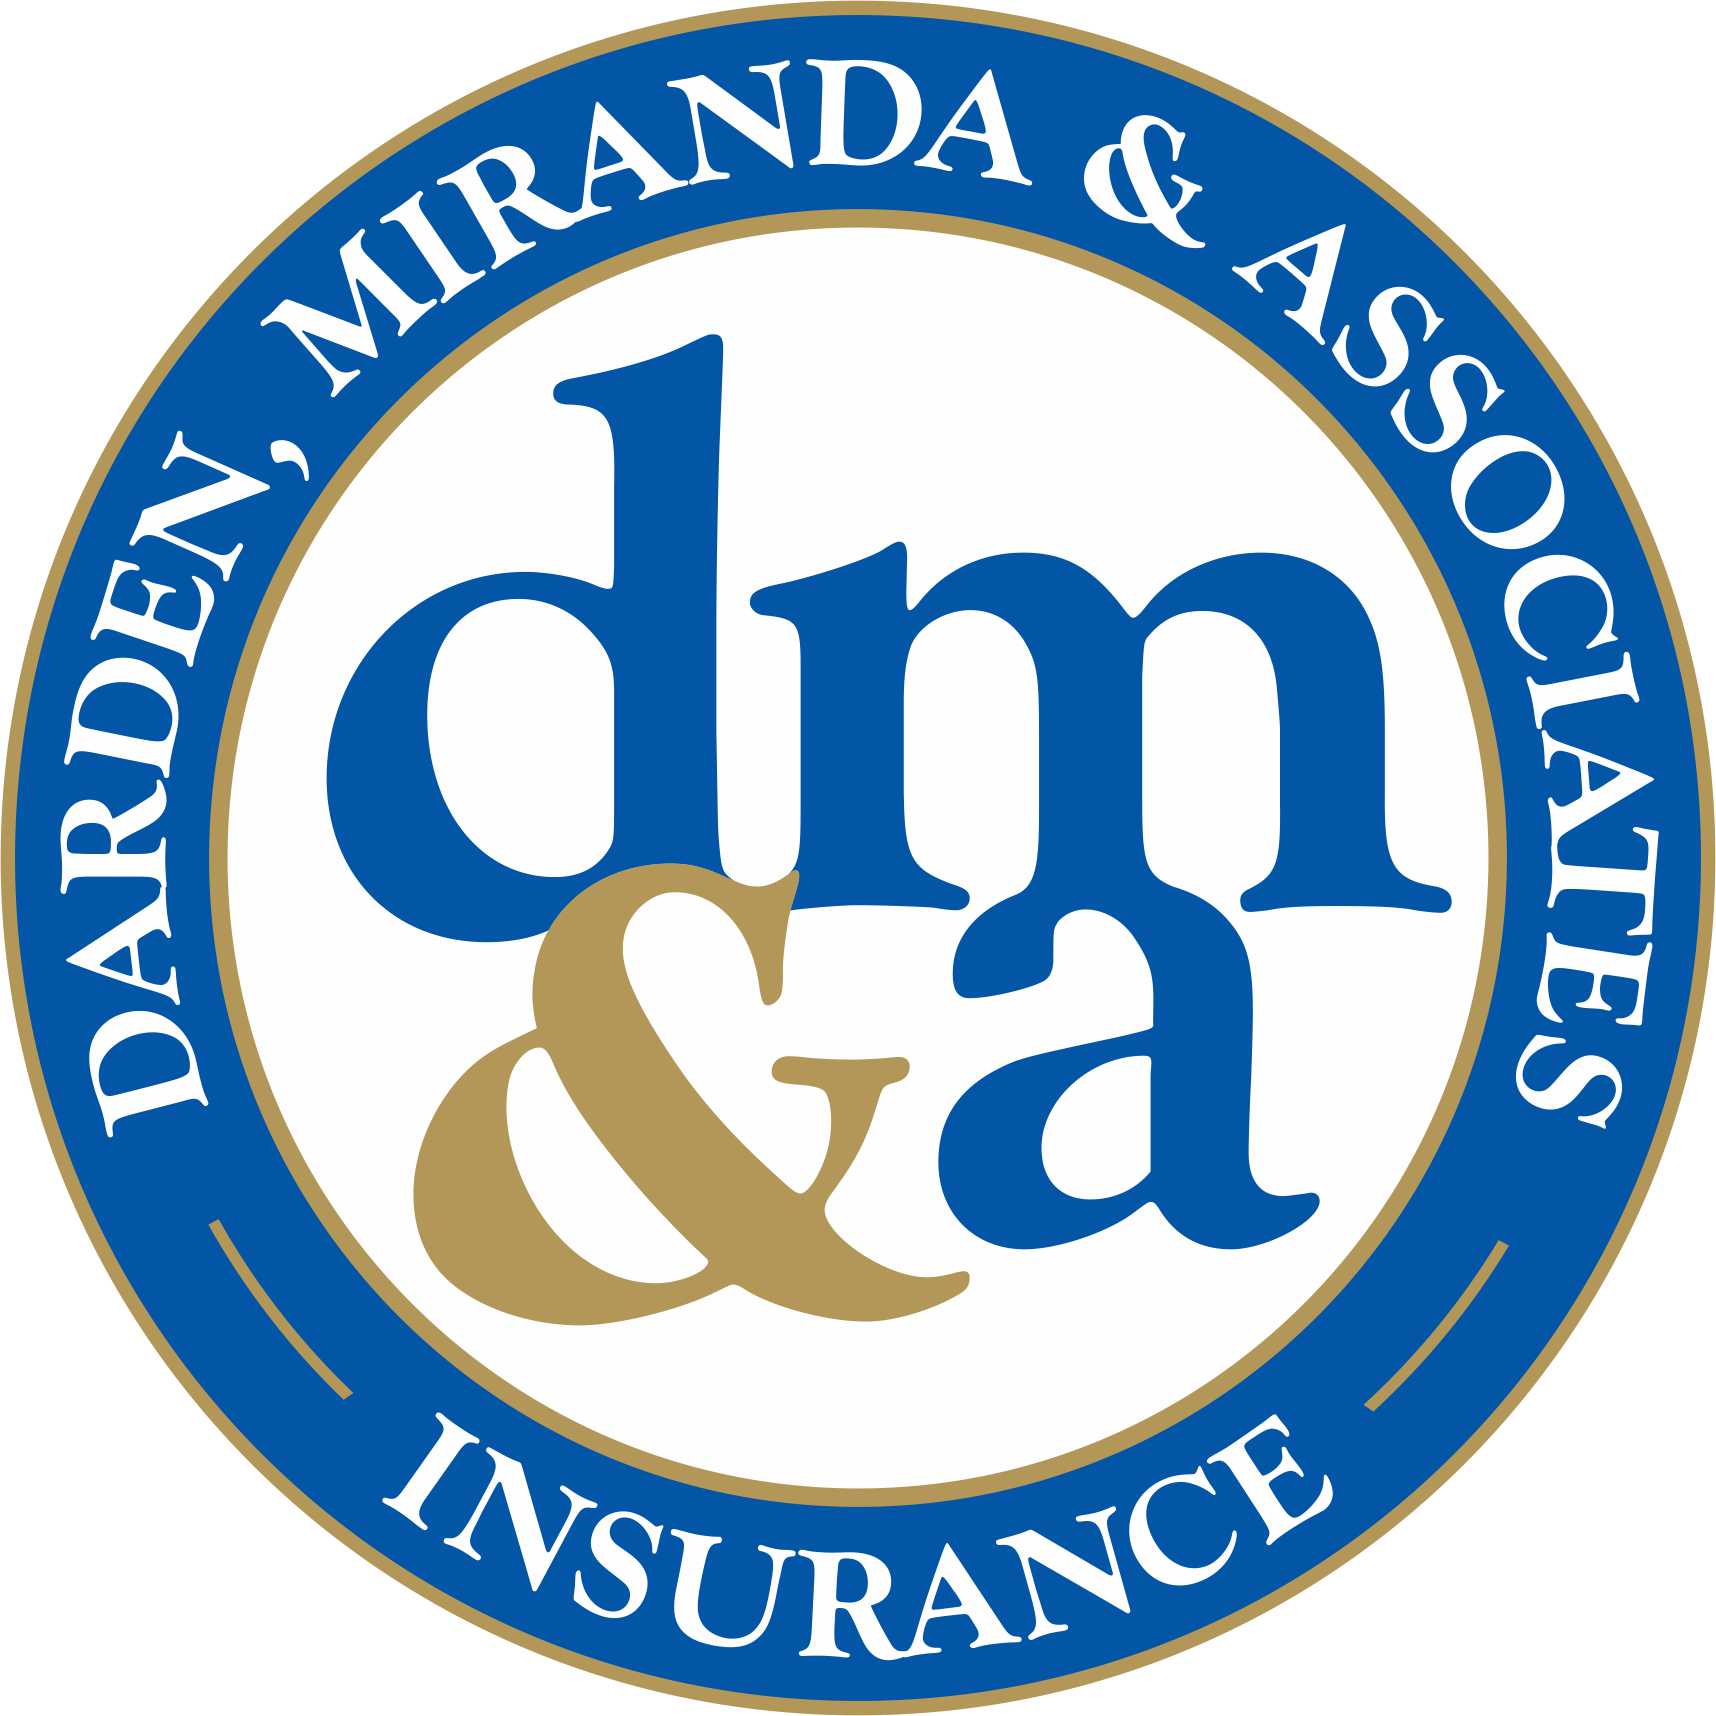 Darden, Miranda & Associates Insurance